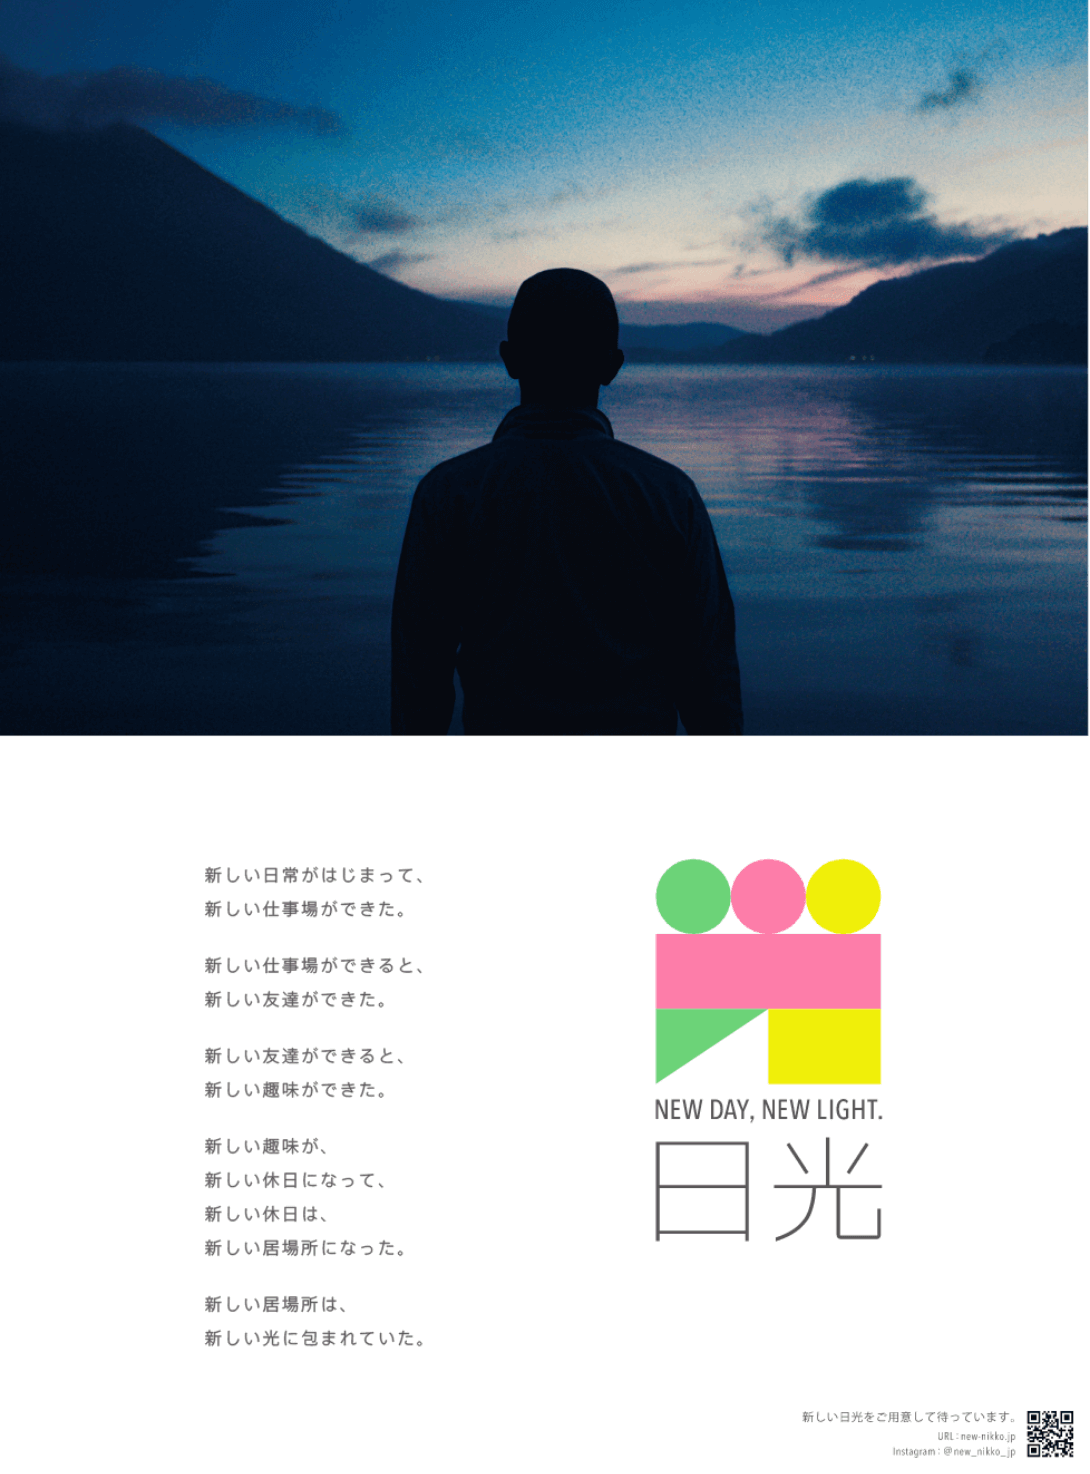 薄暗い空と湖の前に立っている男性の後ろ姿の写真、NEW DAY, NEW LIGHT. 日光のポスター